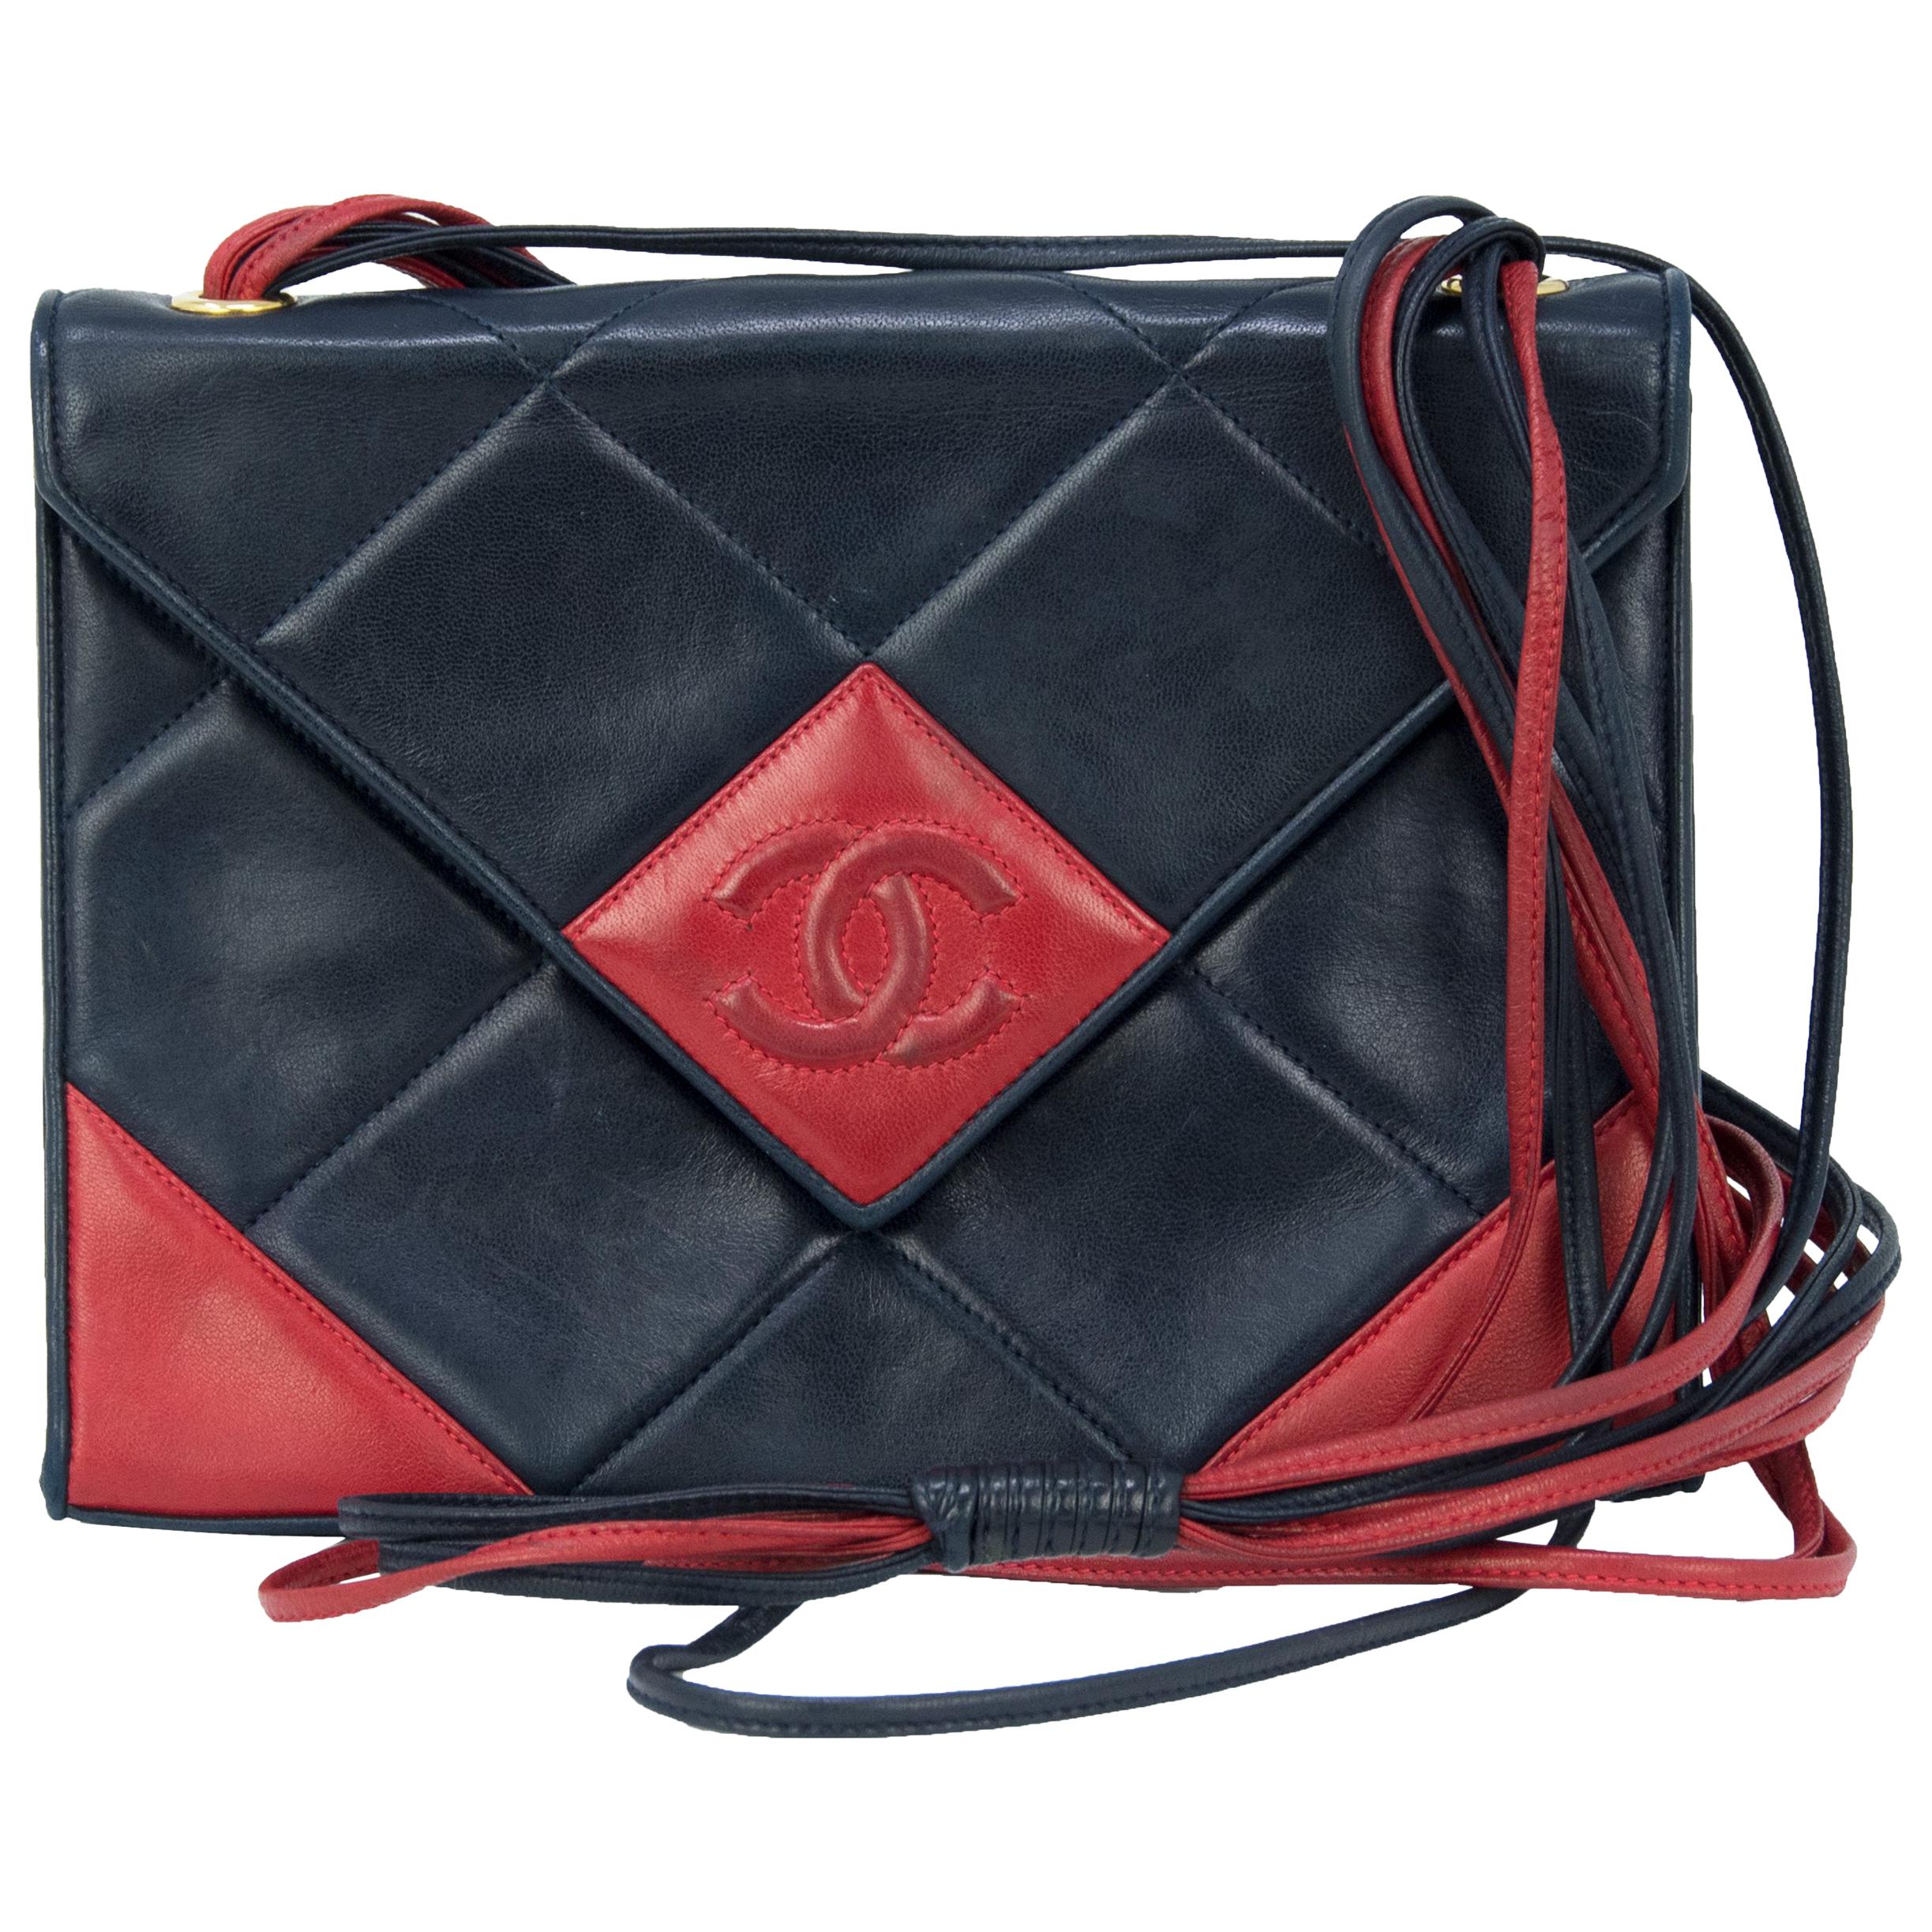 Vintage Chanel Red & Black Quilted Leather Handbag For Sale